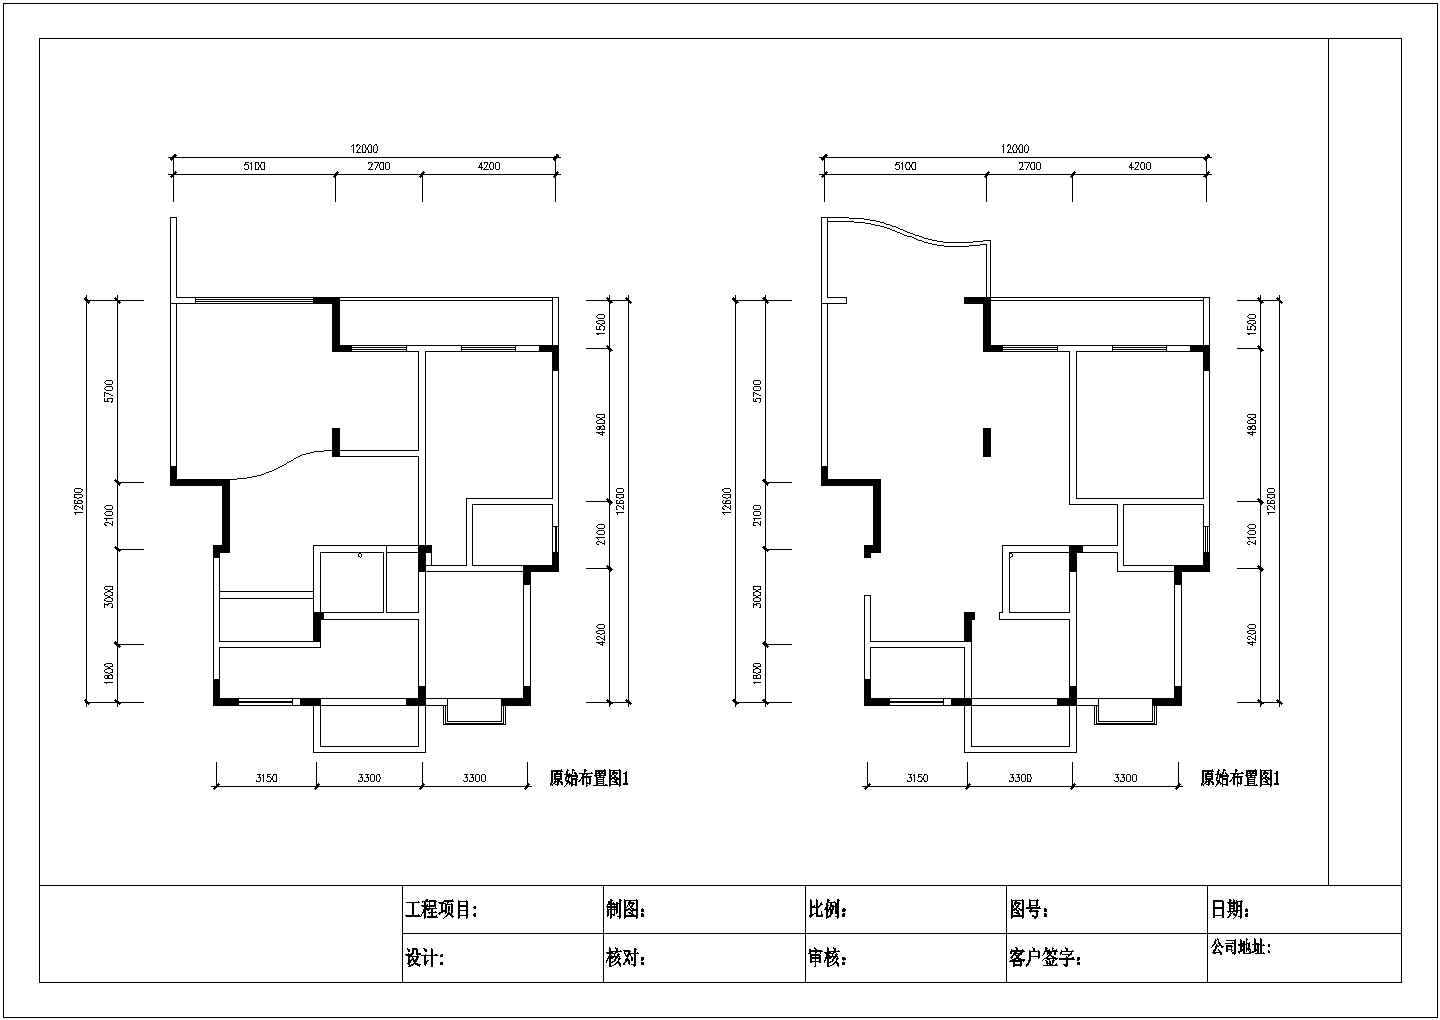 300平米跃层式住宅装饰装修设计施工图纸